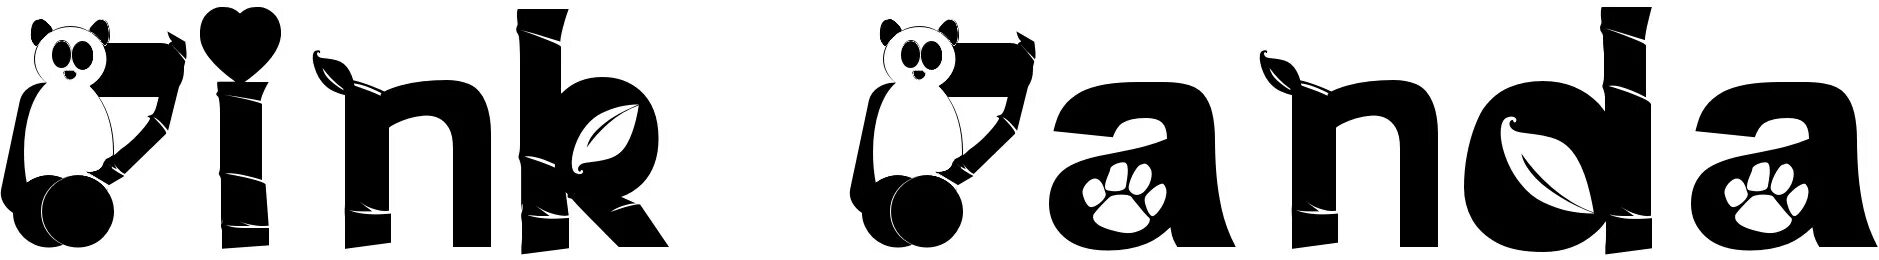 Pat c. Панда шрифт. Панда из шрифта __. Панда красивым шрифтом. Cute Panda шрифт.